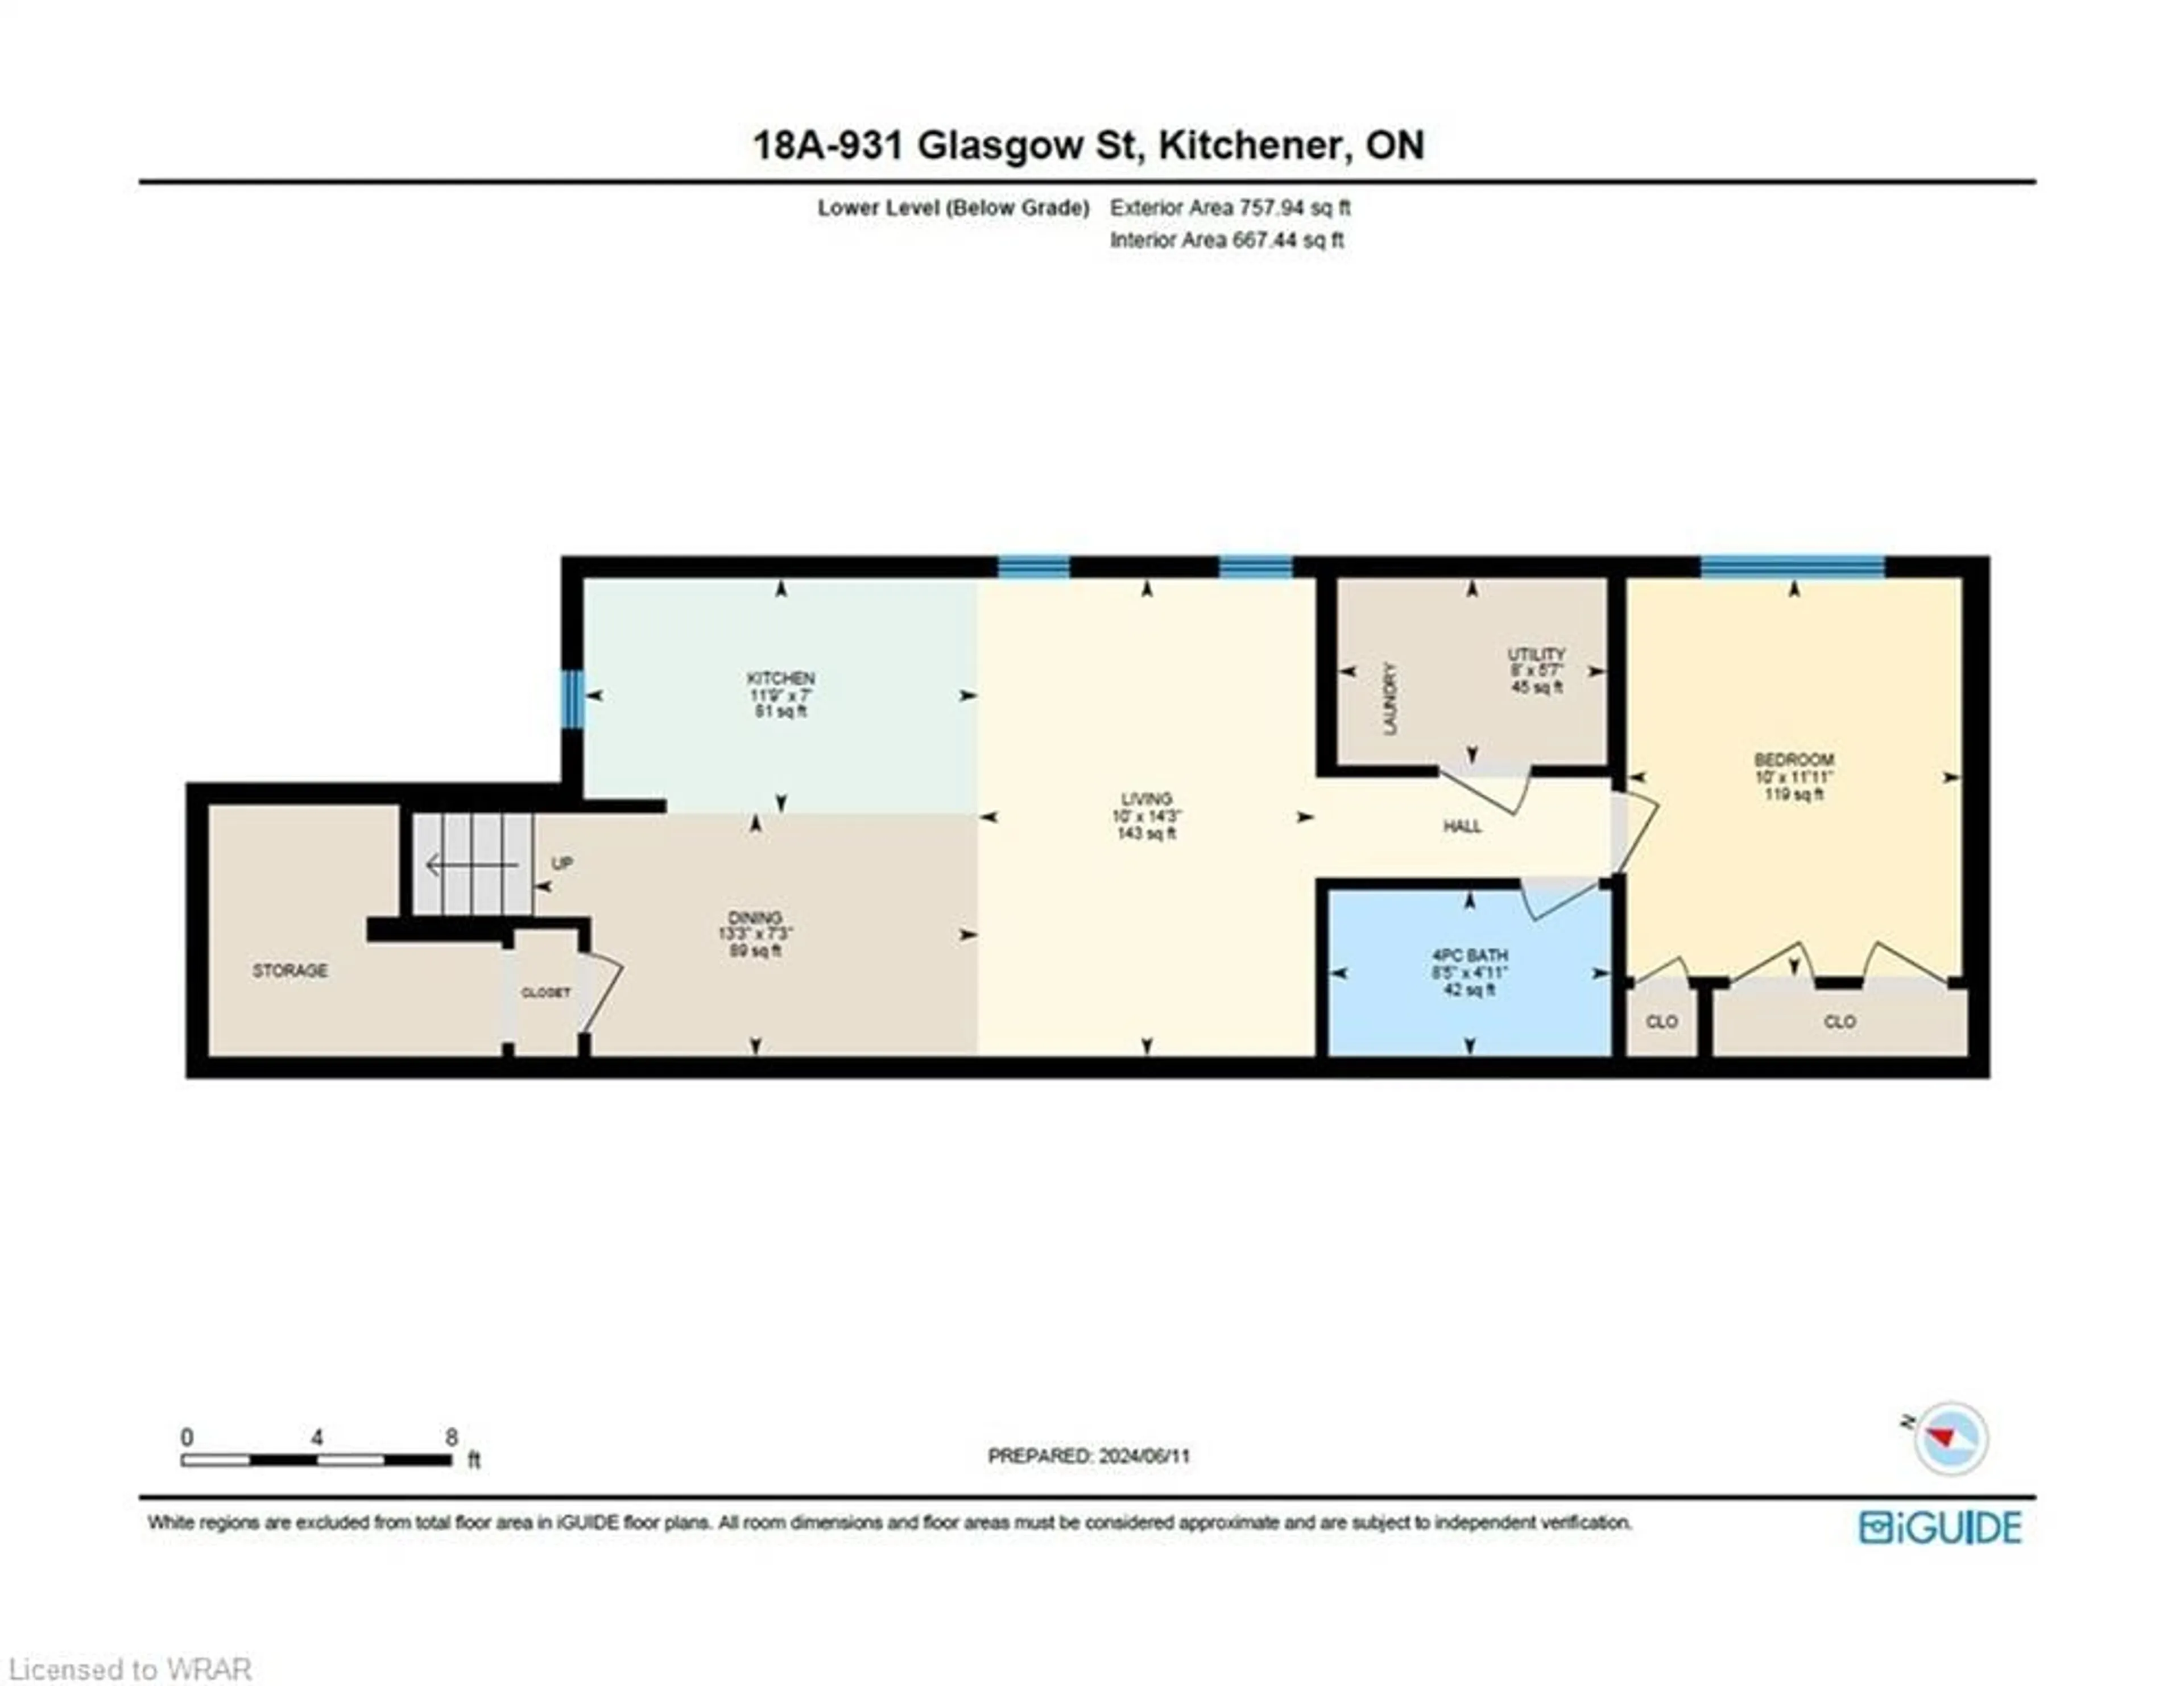 Floor plan for 931 Glasgow St #18A, Kitchener Ontario N2N 2Y7